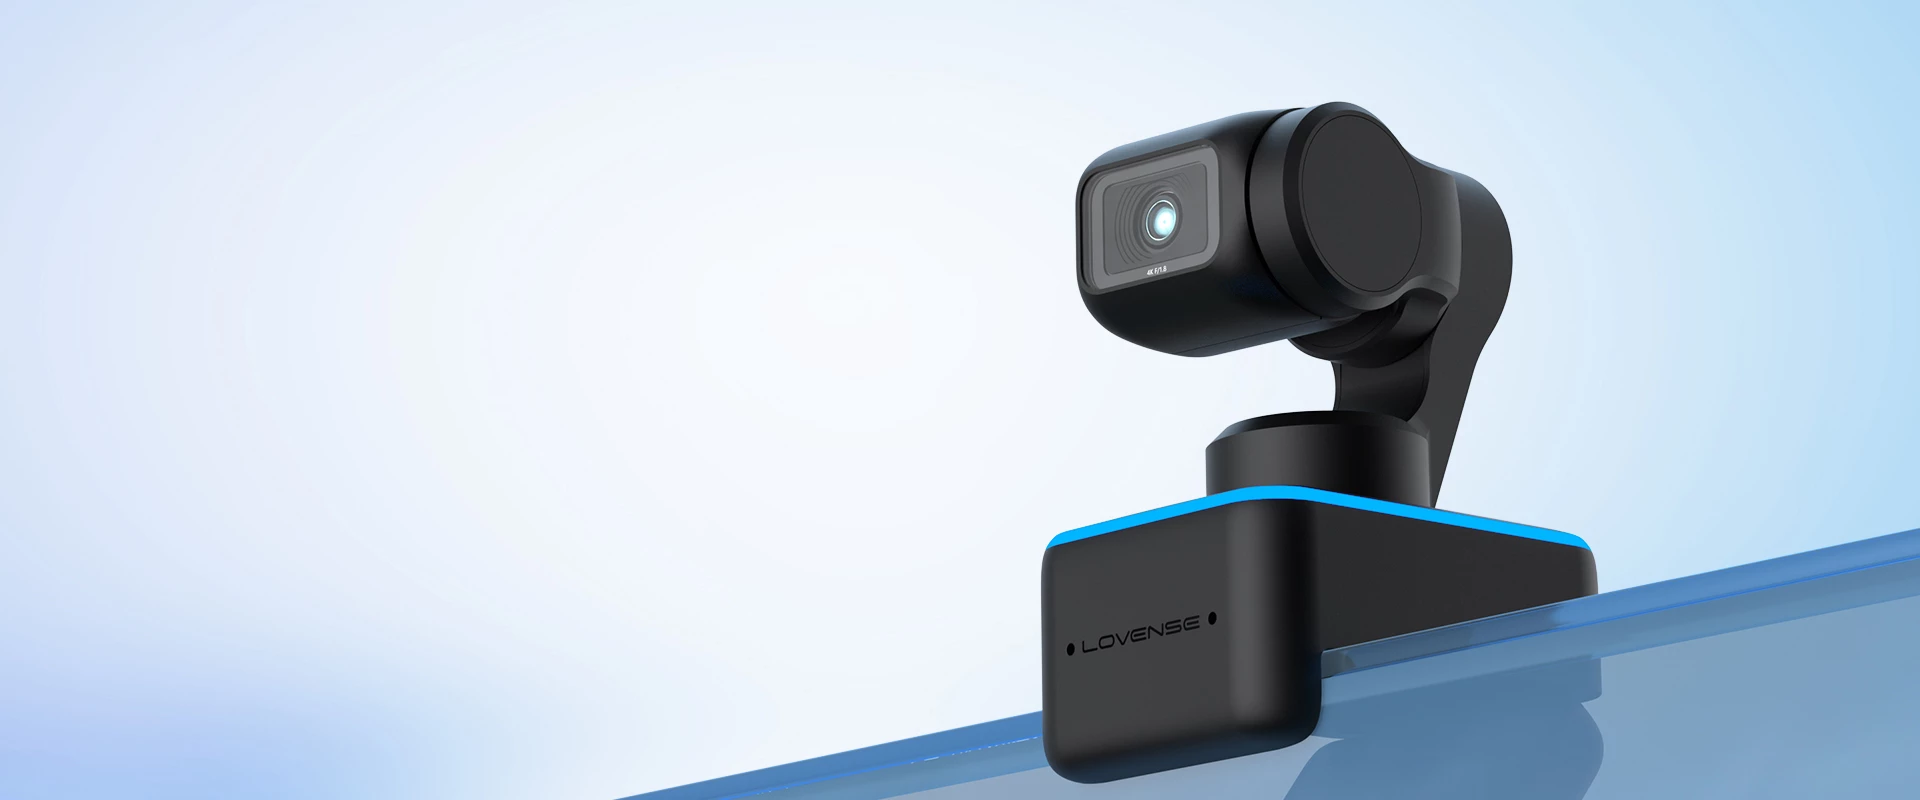 Lovense smart webcam for live streaming